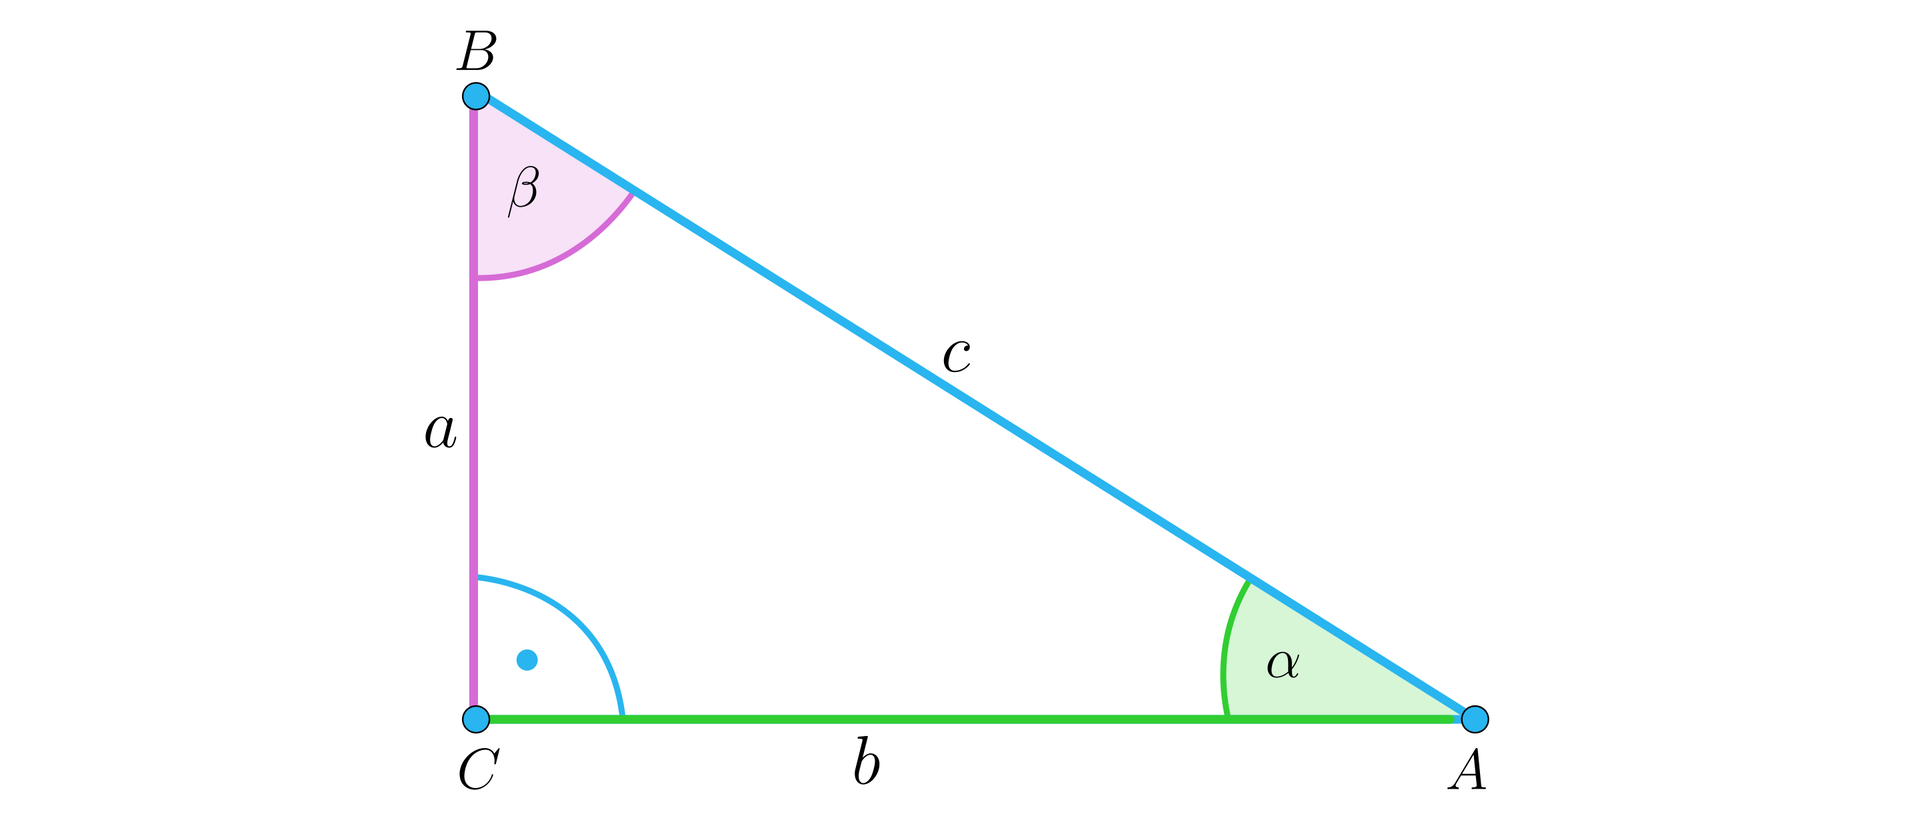 Grafika przedstawia trójkąt prostokątny A B C. Pozioma przyprostokątna A C ma długość b, pionowa przyprostokątna B C ma długość a, natomiast przeciwprostokątna A B ma długość c. Kąty wewnętrzne figury to: kąt ostry alfa przy wierzchołku A, kąt ostry beta przy wierzchołku B oraz kąt prosty przy wierzchołku C.